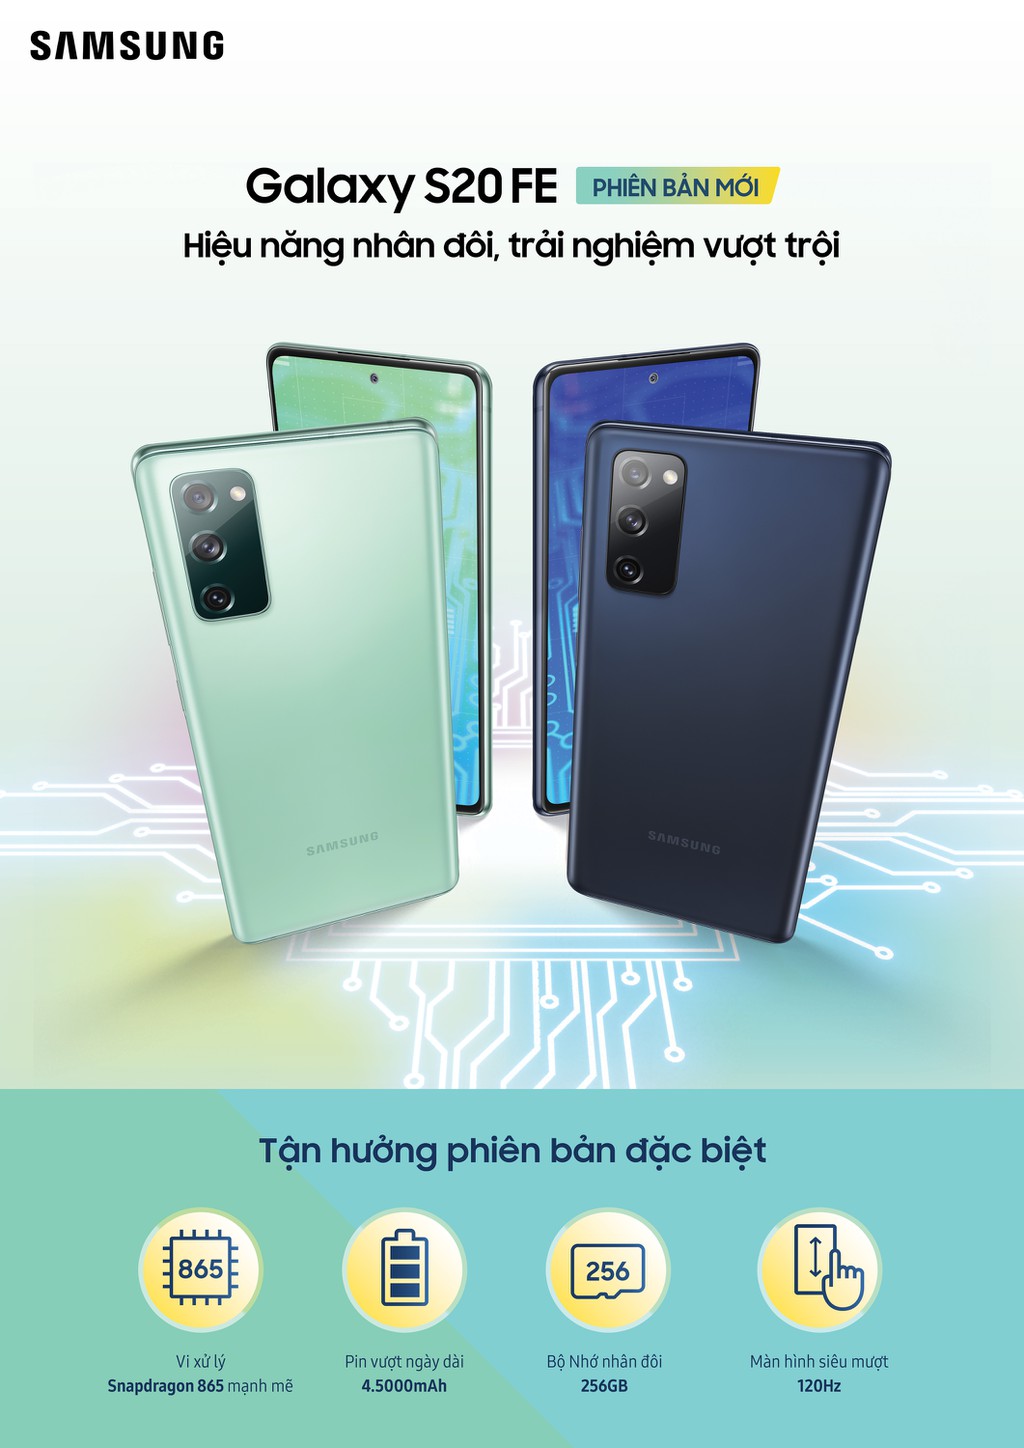 Samsung ra mắt Galaxy S20 FE fan Edition tới người dùng Việt giá hấp dẫn 15,5 triệu  ảnh 1